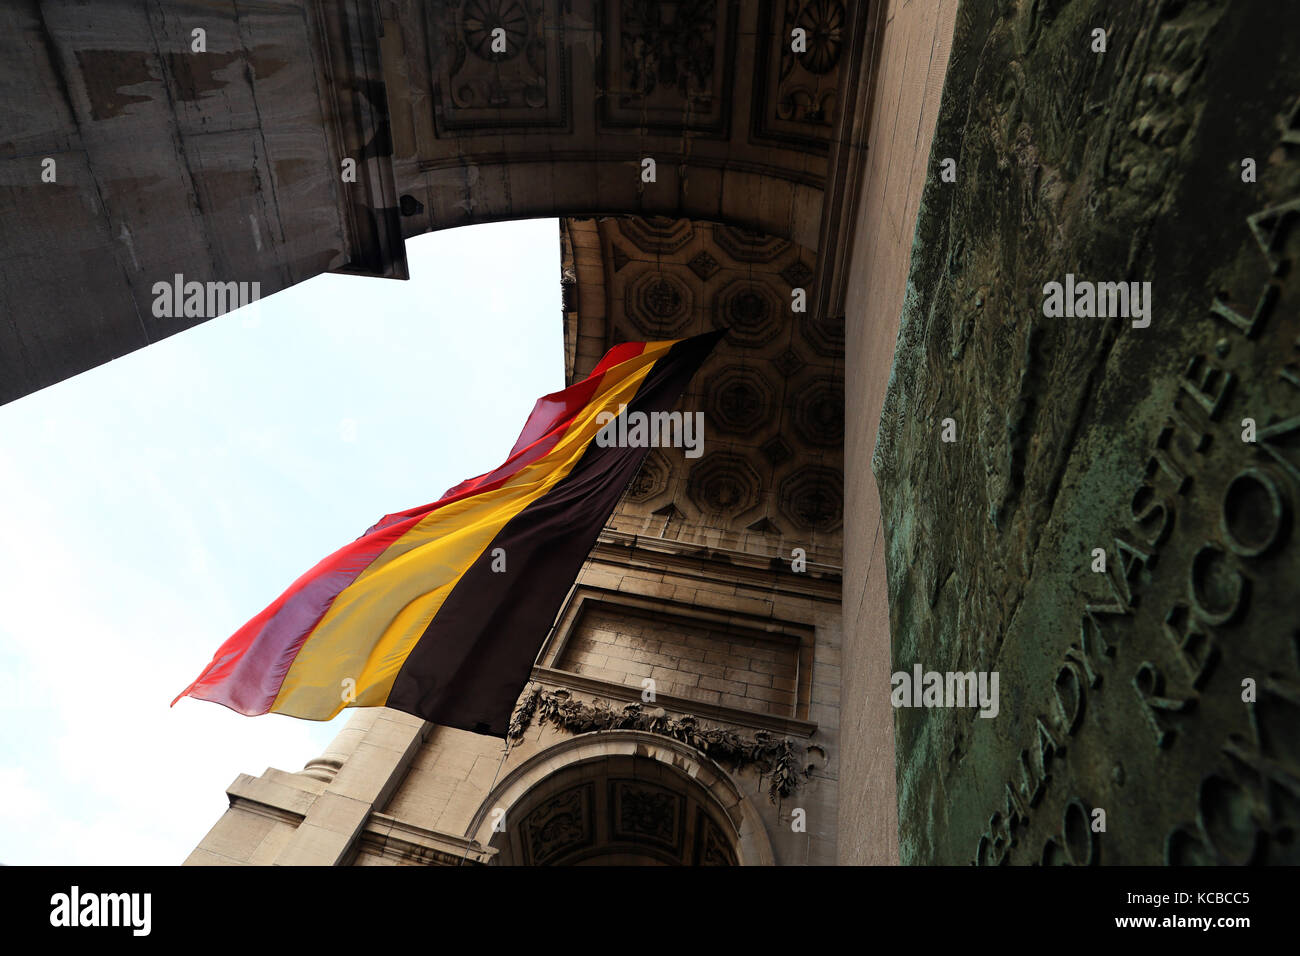 Belgian  flag in famous  triumphal arch in Parc du Cinquantenaire close-up. Stock Photo